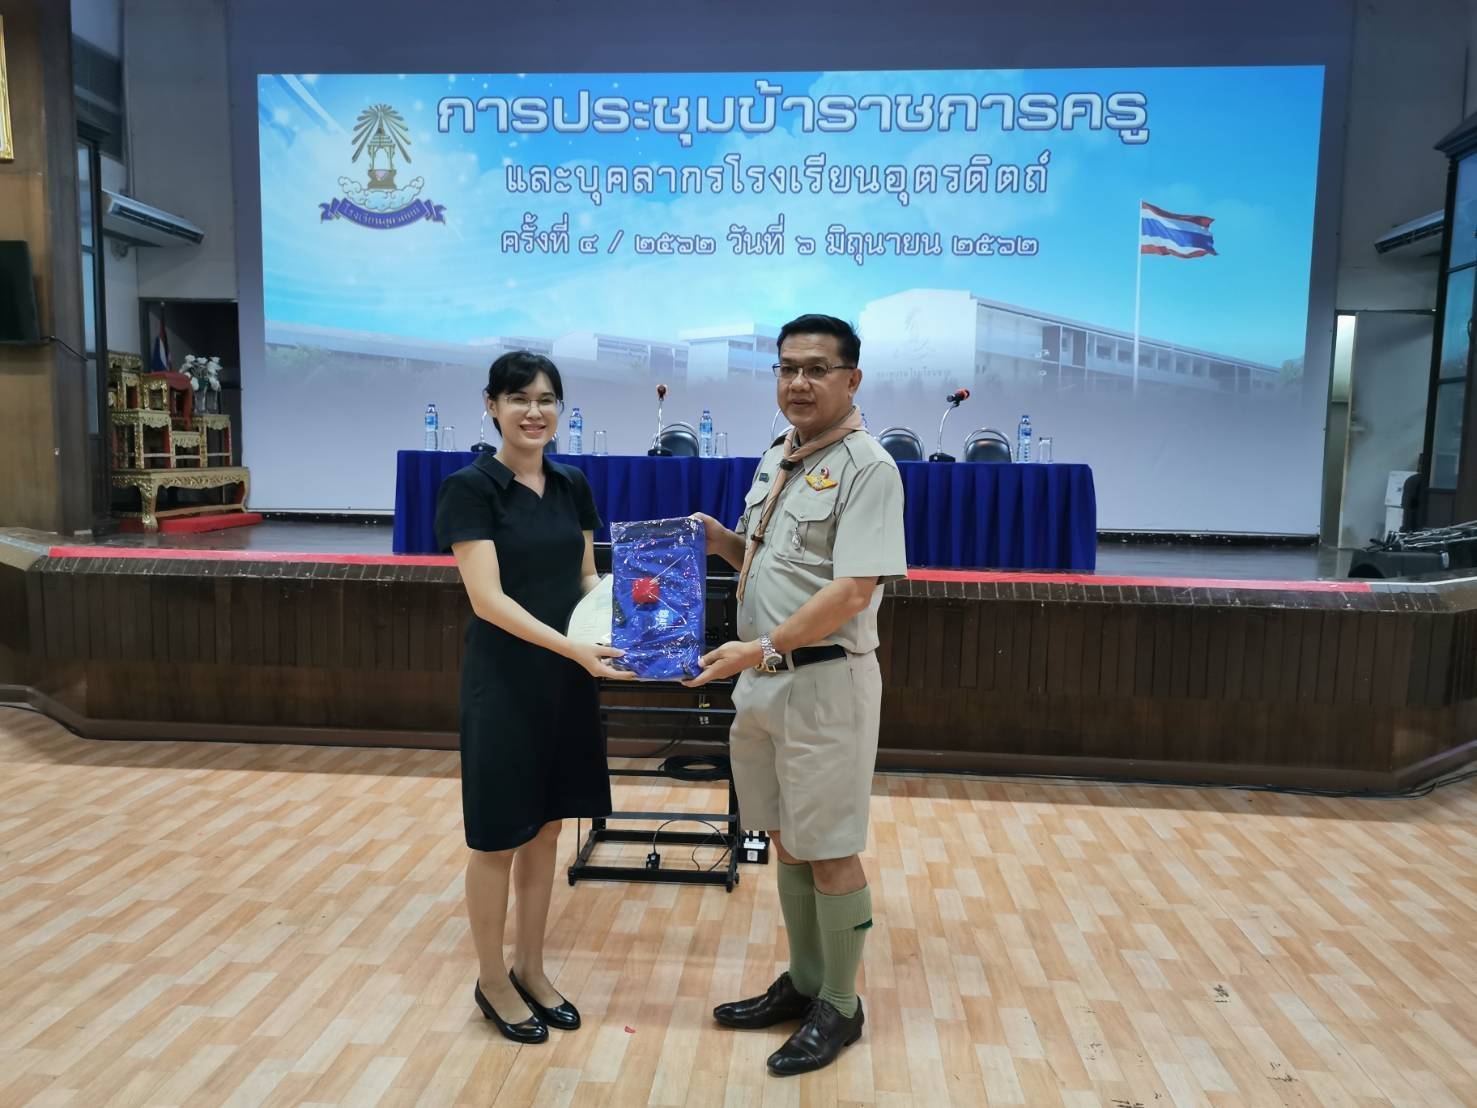 ประธาน AFS เขตอุตรดิตถ์ ดร.บัญชร จันทร์ดา มอบรางวัล AFS ดีเด่น เขตอุตรดิตถ์ แก่ คุณครูนิตยา แก้วทองมา จากมูลนิธิการศึกษาและวัฒนธรรมสัมพันธ์ไทยนานาชาติ (เอเอฟเอส ประเทศไทย)